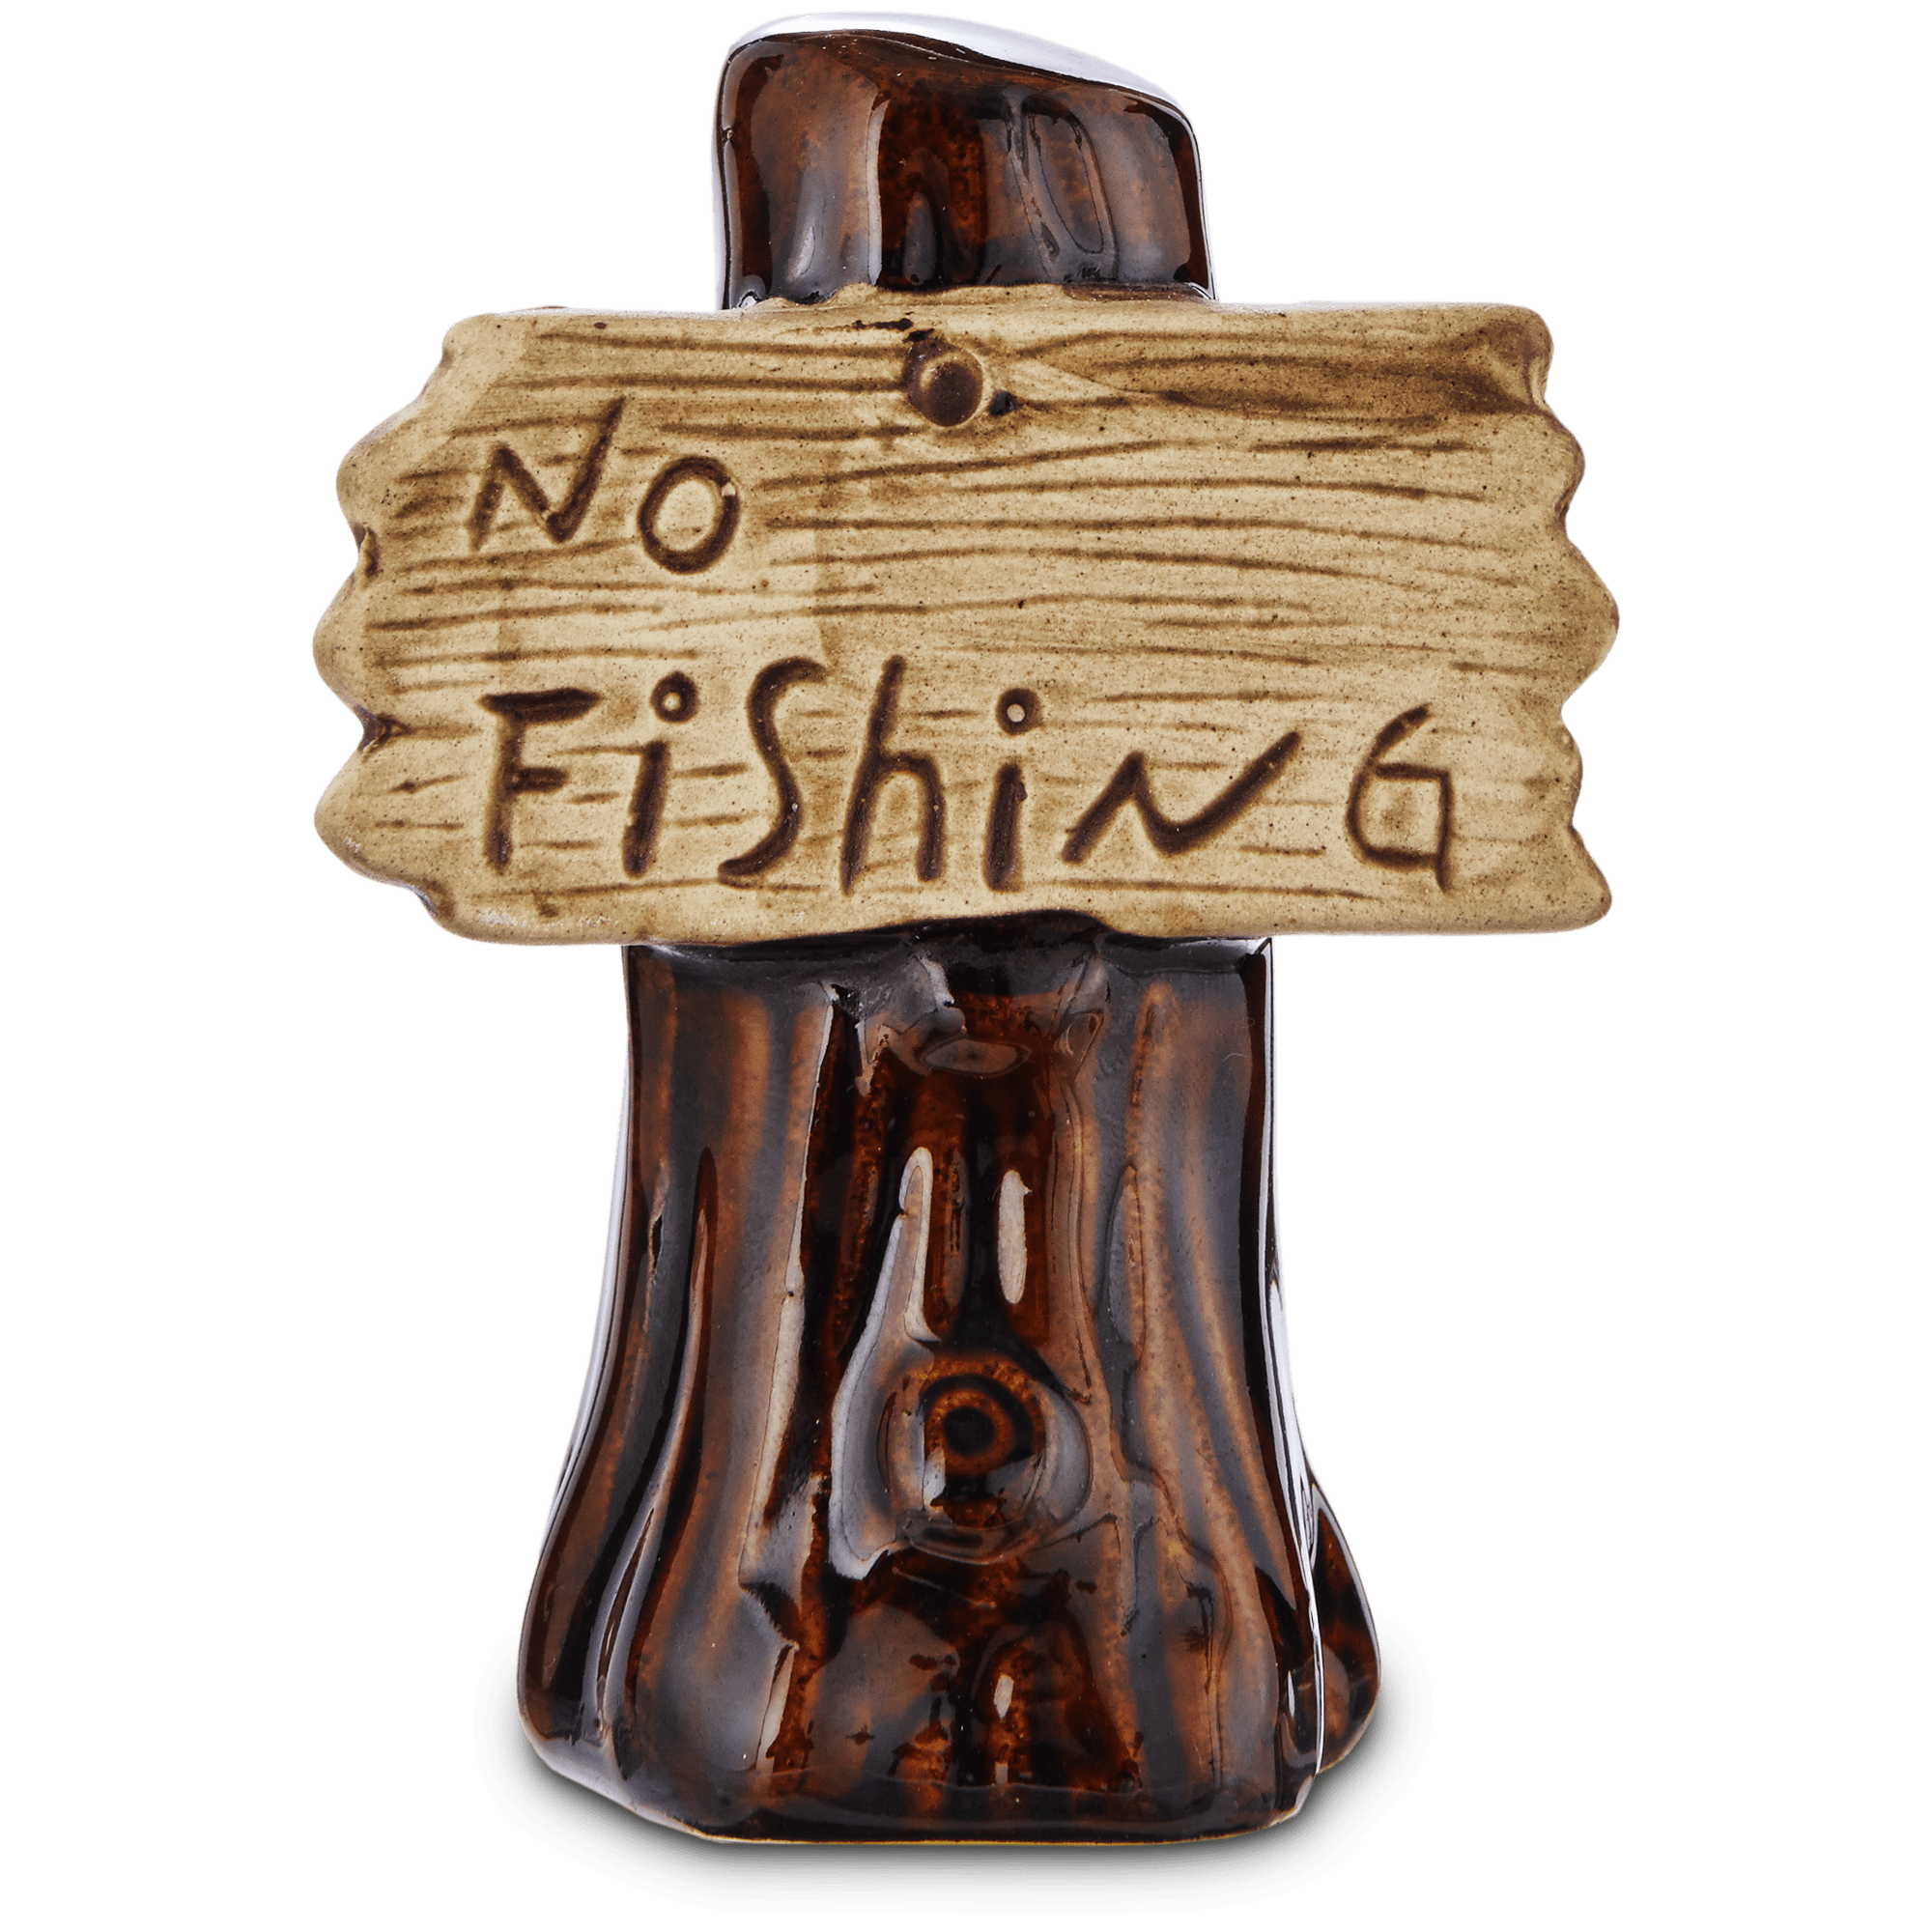 Imagitarium No Fishing Sign Aquatic Decor